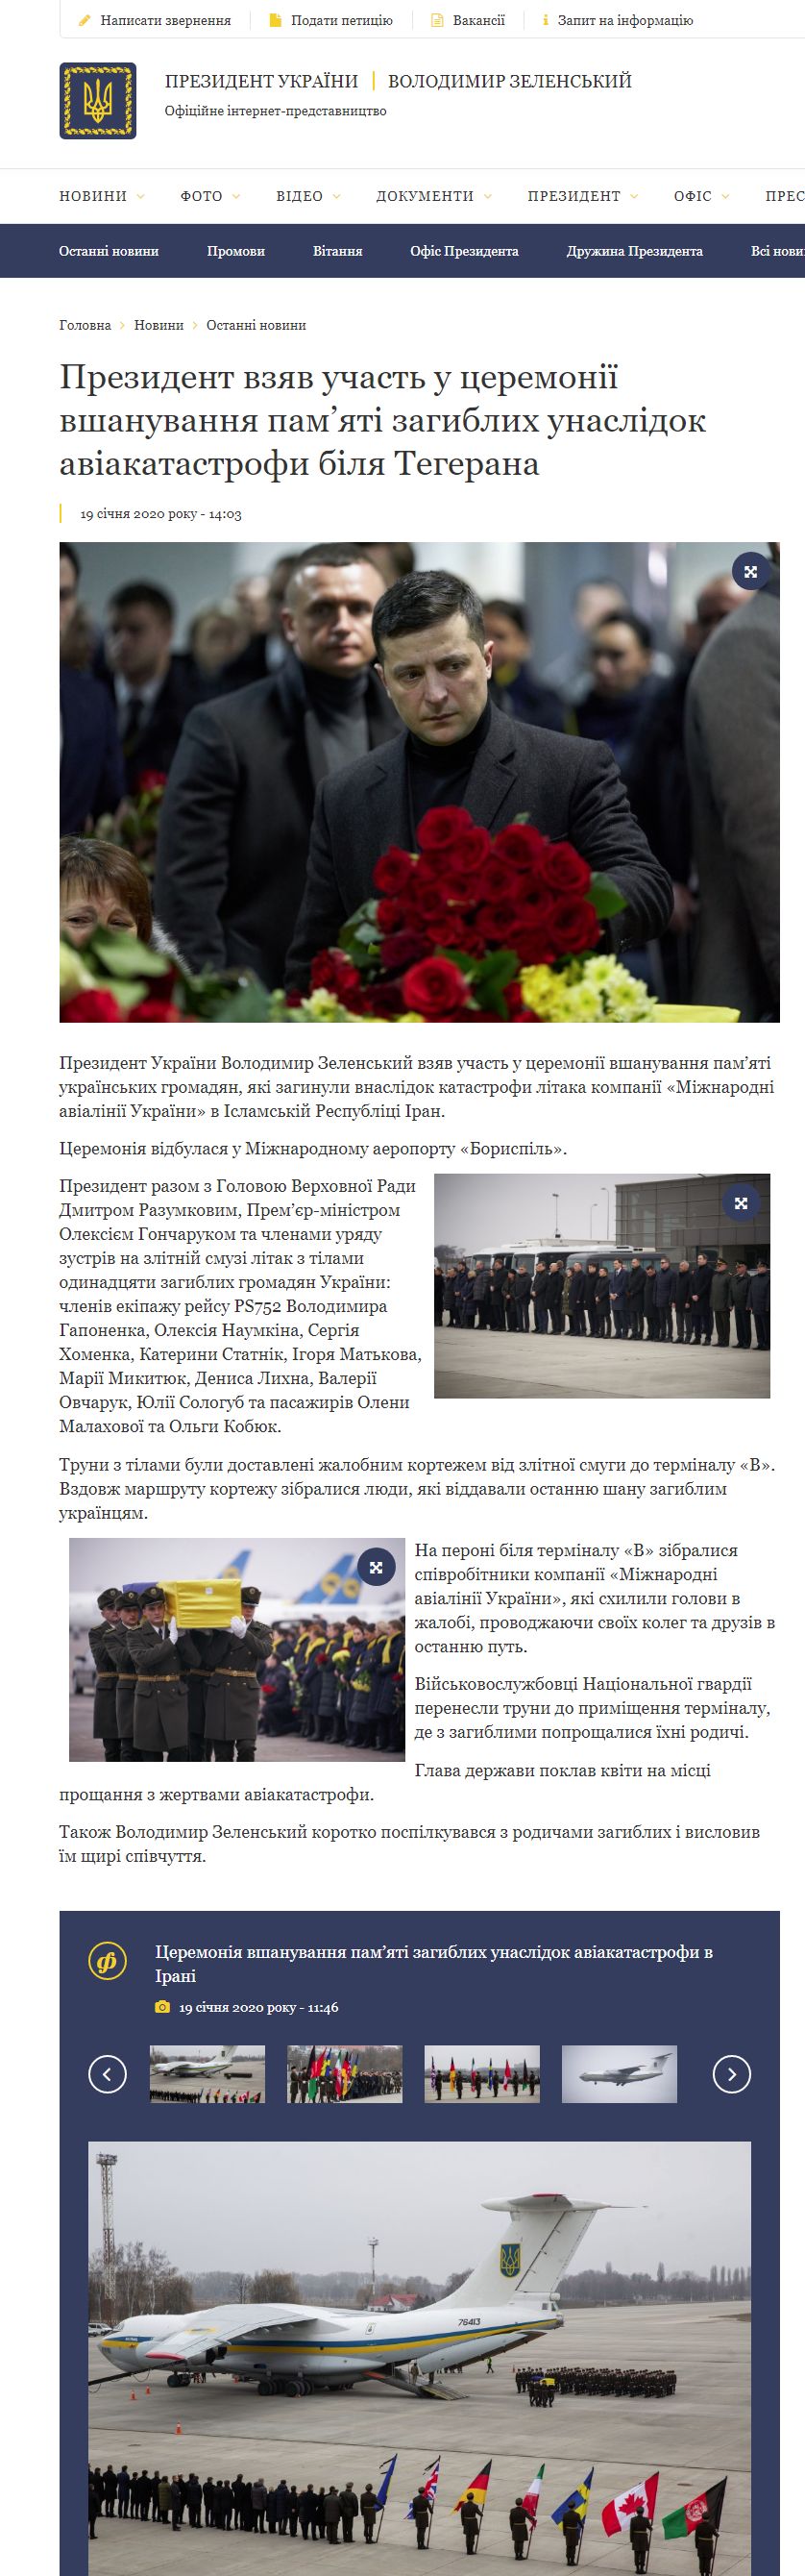 https://www.president.gov.ua/news/prezident-vzyav-uchast-u-ceremoniyi-vshanuvannya-pamyati-zag-59325